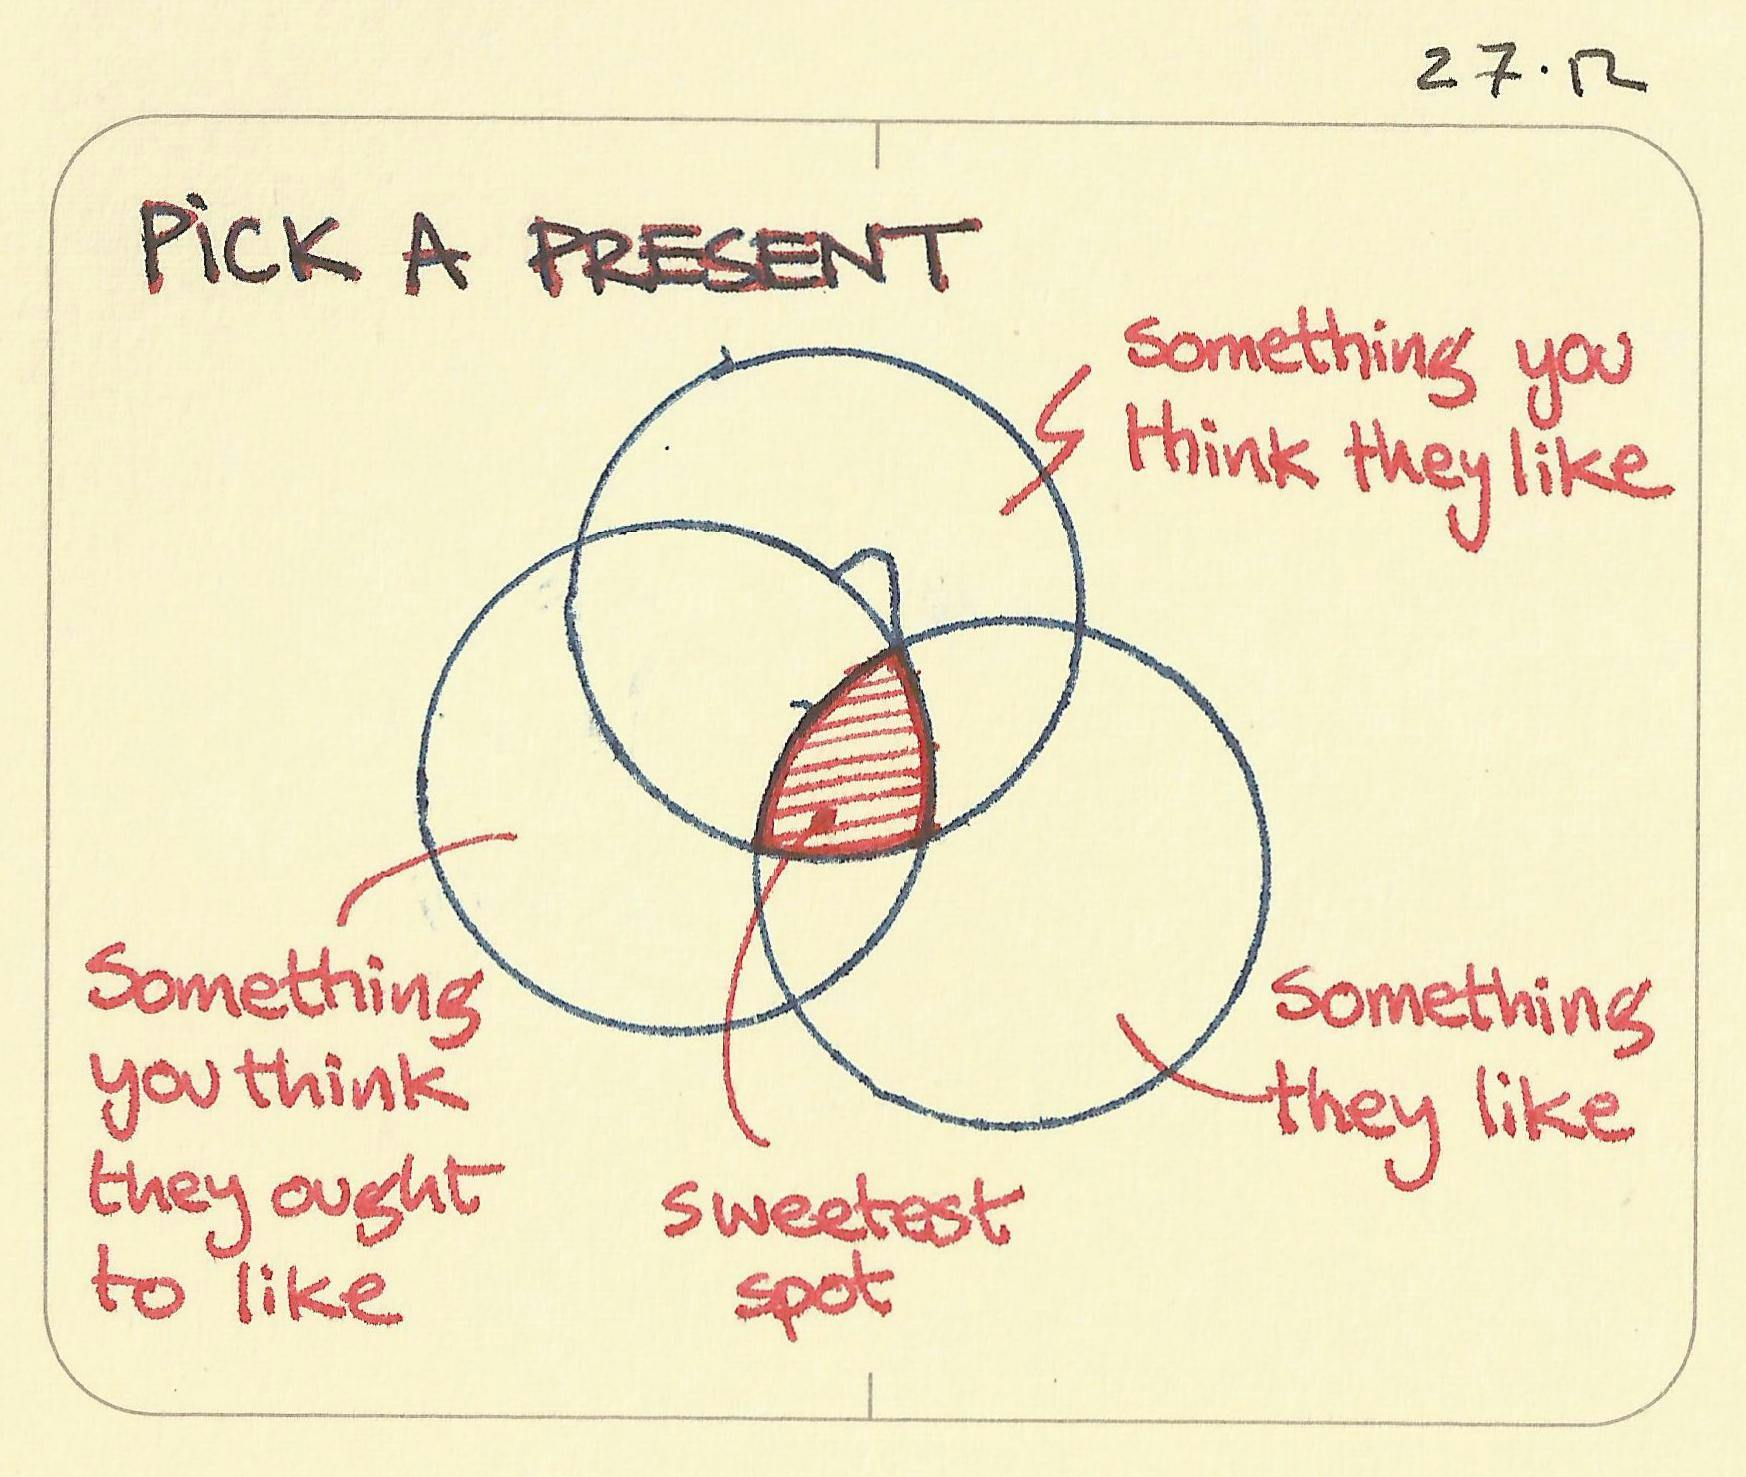 Pick a present - Sketchplanations